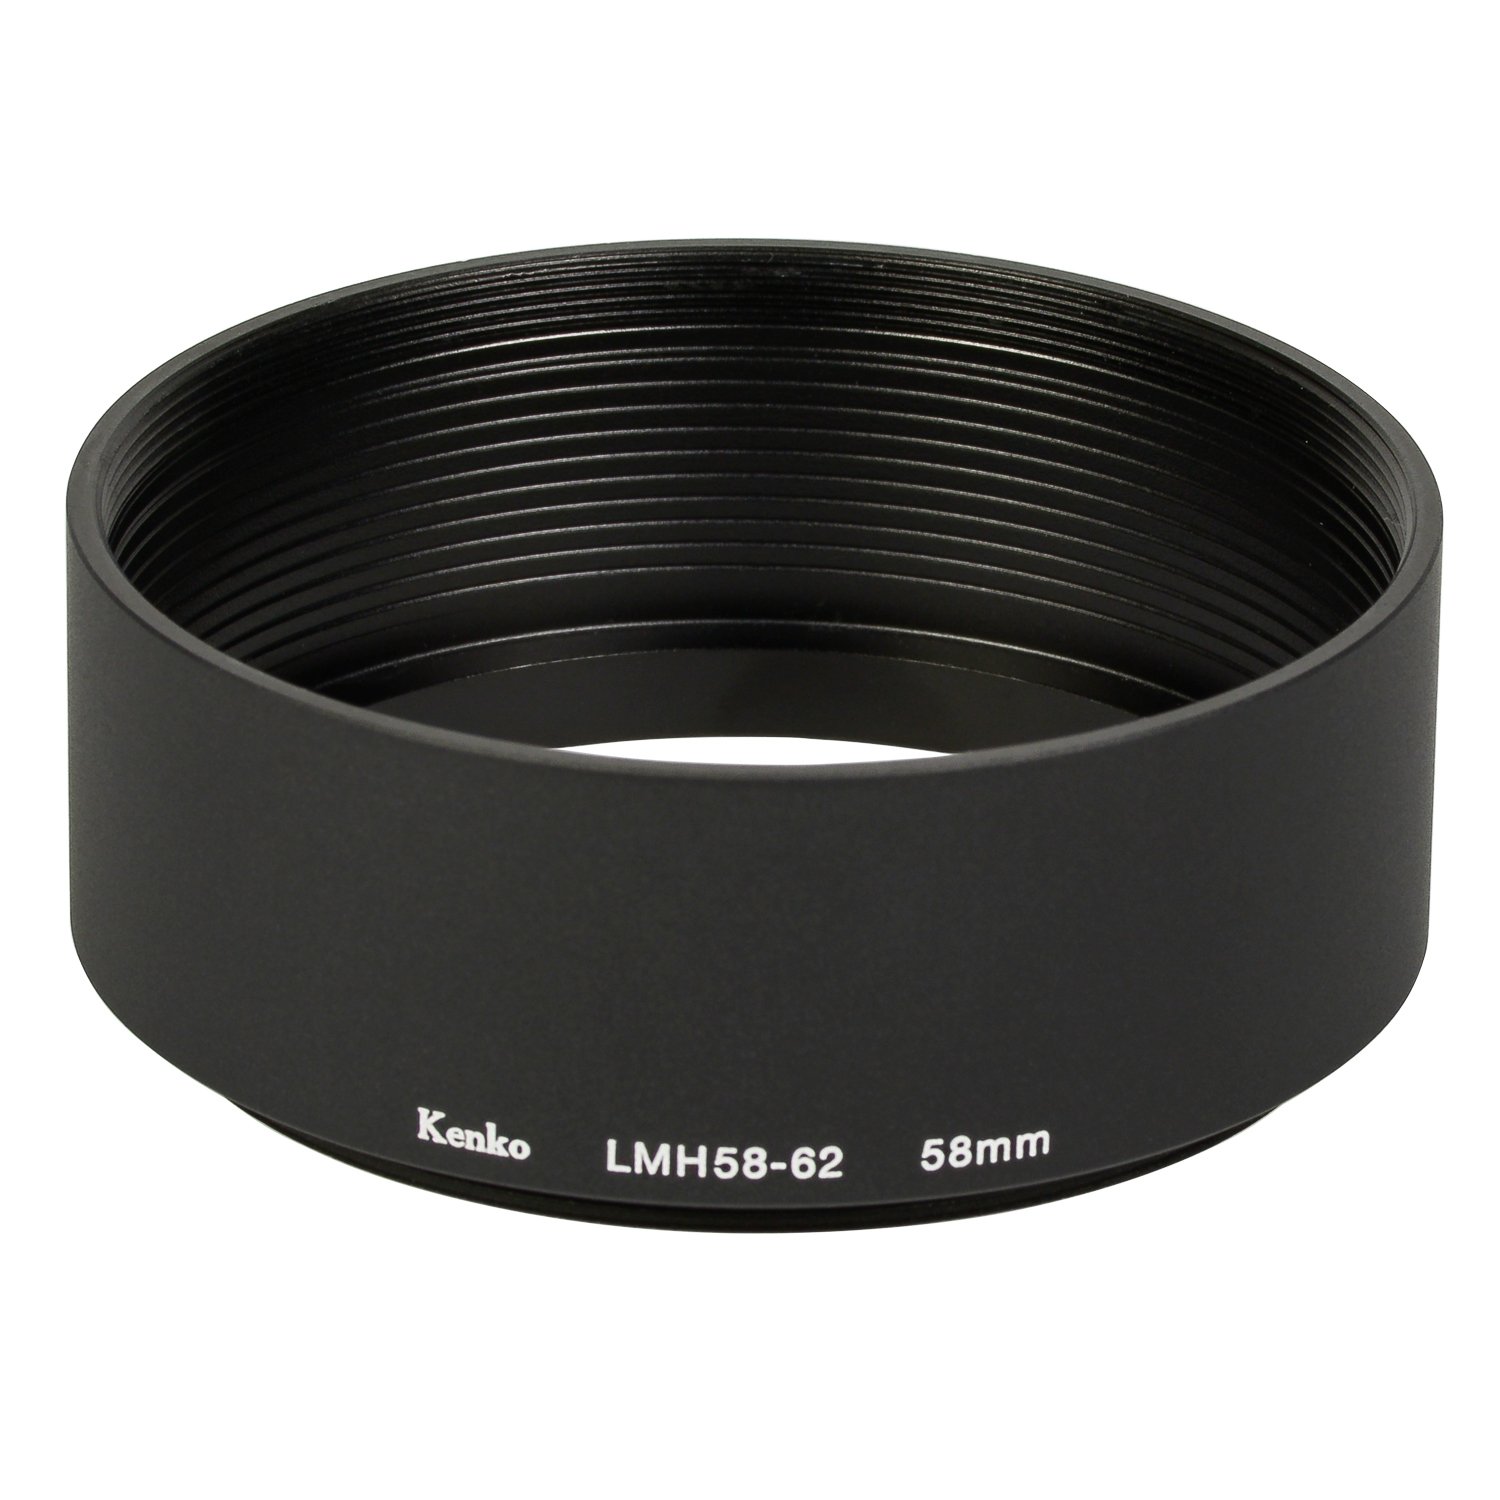 Kenko レンズフード レンズメタルフード LMH58-62 BK 58mm アルミ製 連結可能 792056